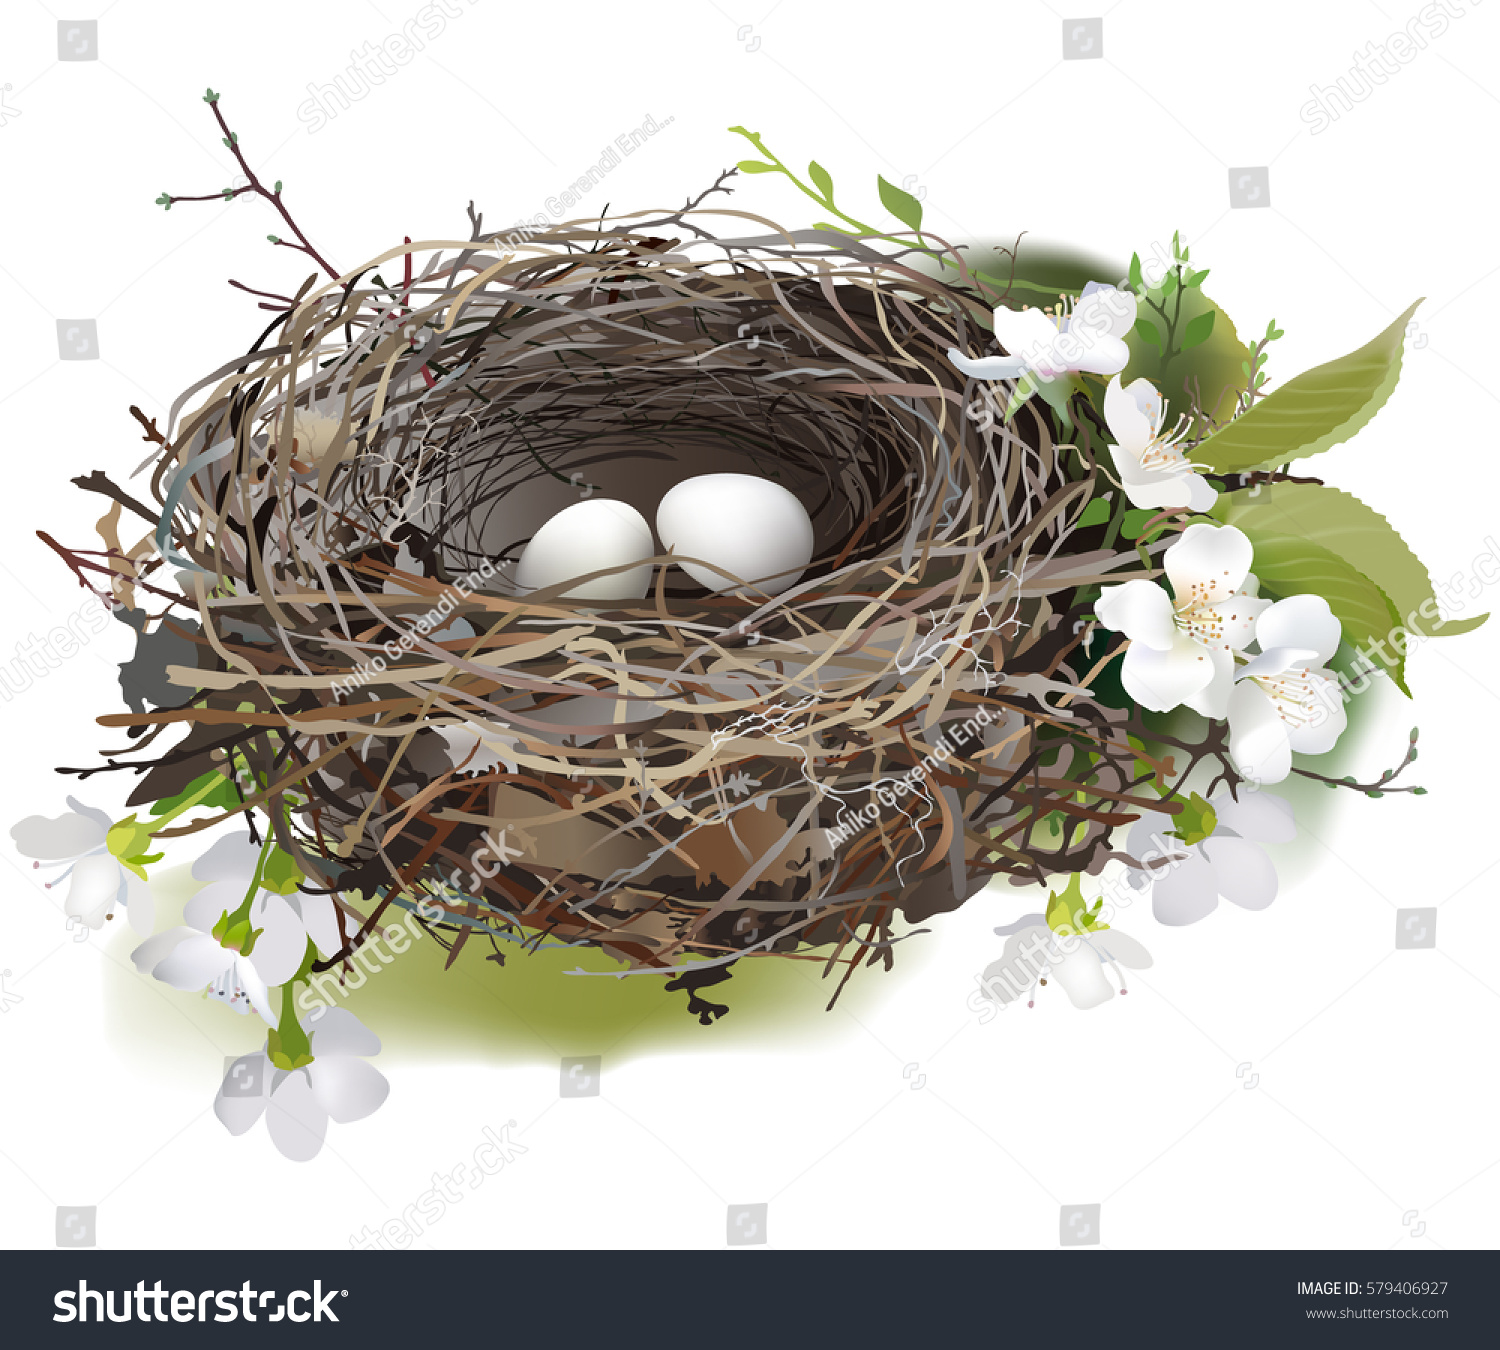 鳥の巣 白い背景に春の花と緑の芽に囲まれた 2つの白い卵の巣の手描きのベクターイラスト のベクター画像素材 ロイヤリティフリー